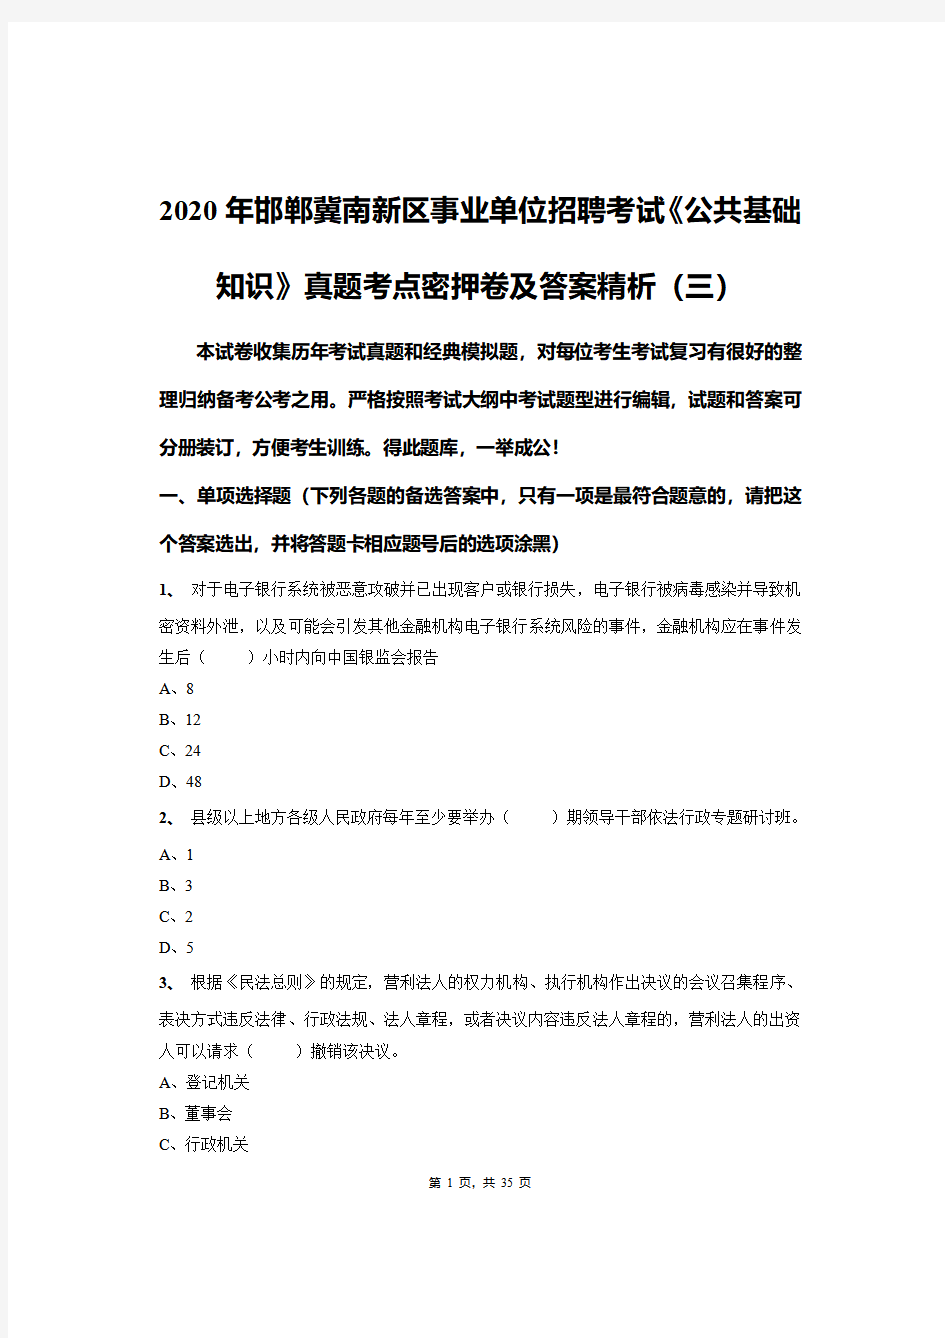 2020年邯郸冀南新区事业单位招聘考试《公共基础知识》真题密押卷及答案精析(三)